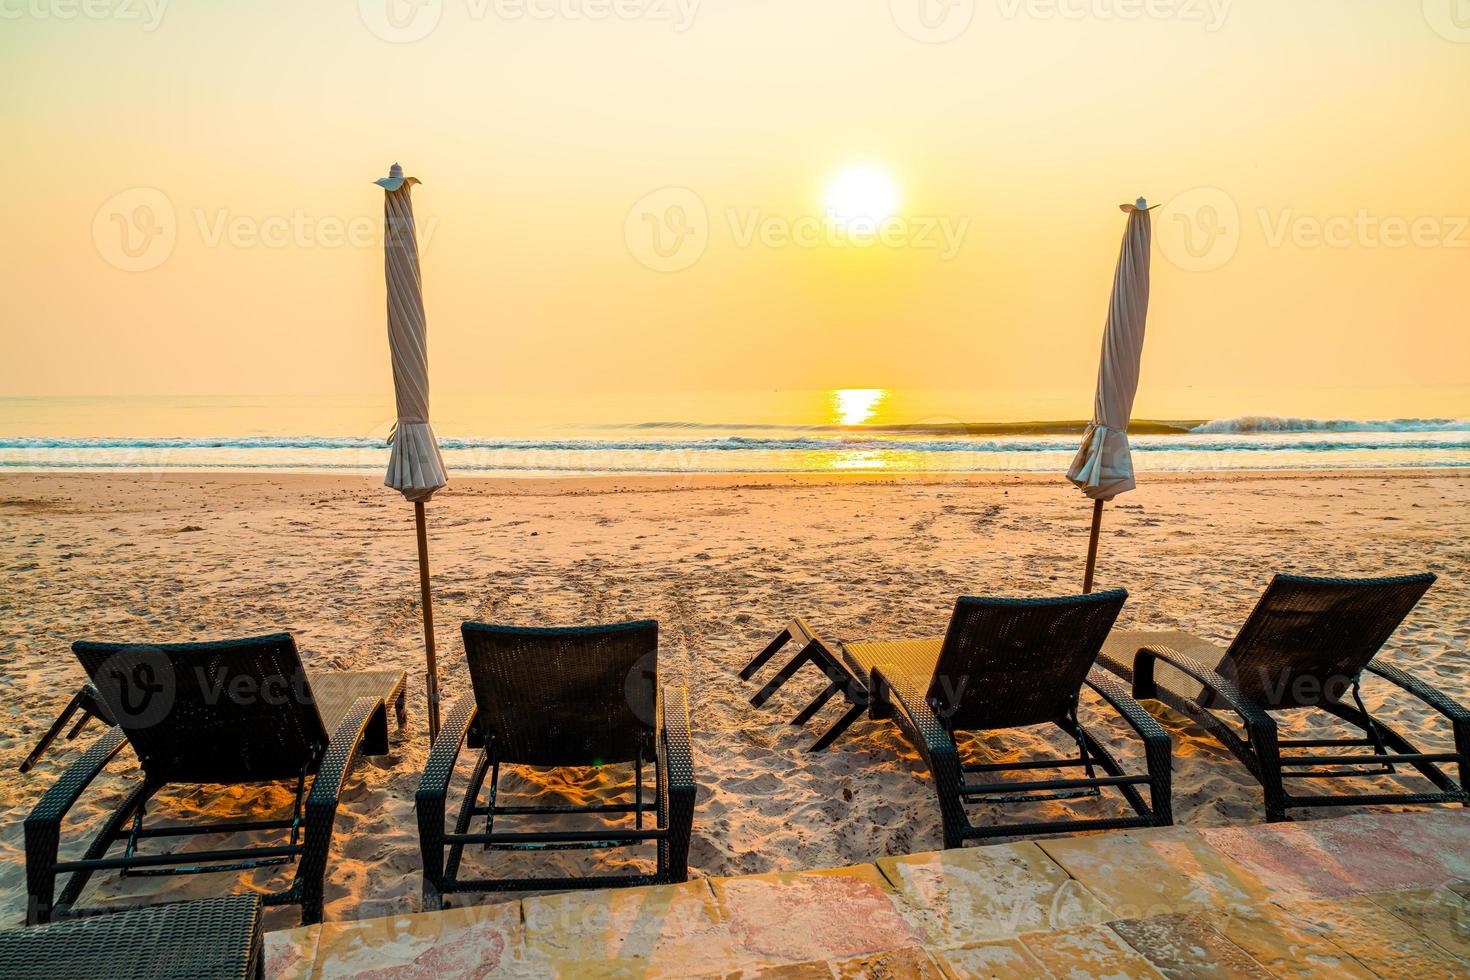 paraplystrandstol med palmträd och havsstrand vid soluppgångstid - semester- och semesterkoncept foto